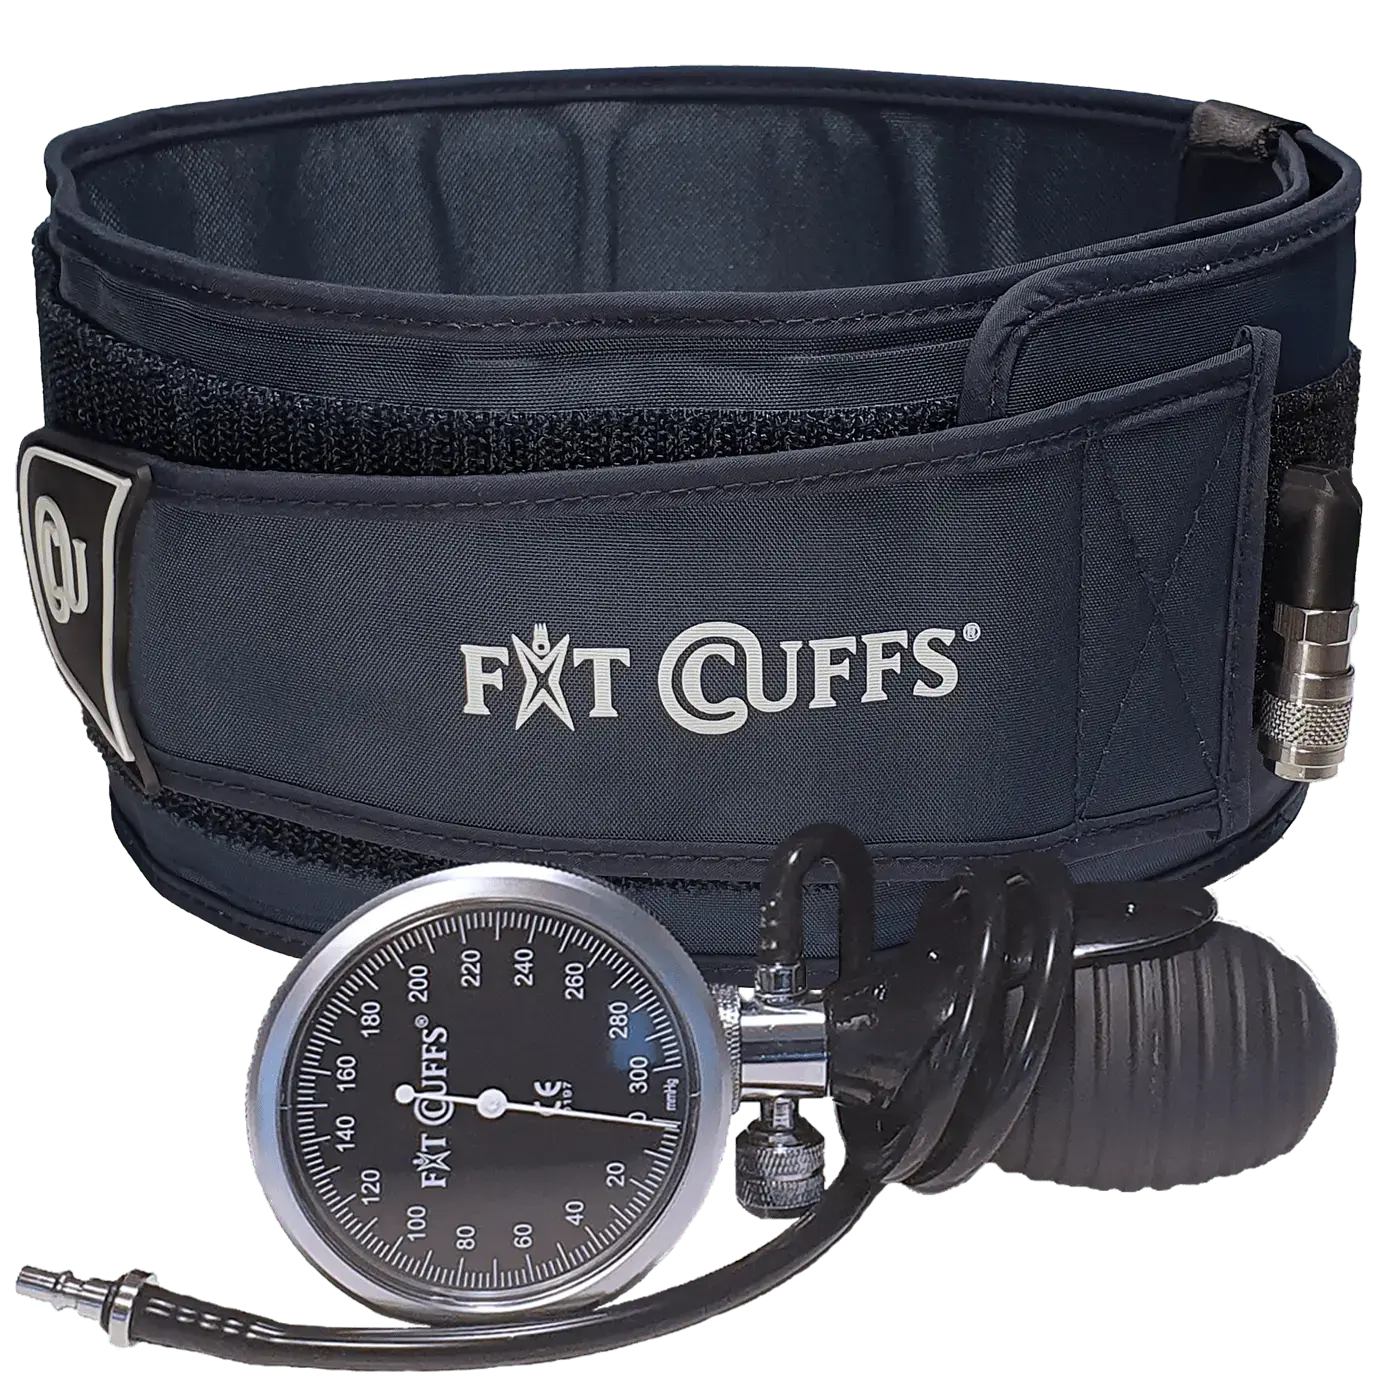 Se Fit Cuffs - Rehab Lower - Standard hos Fitcuffs.com